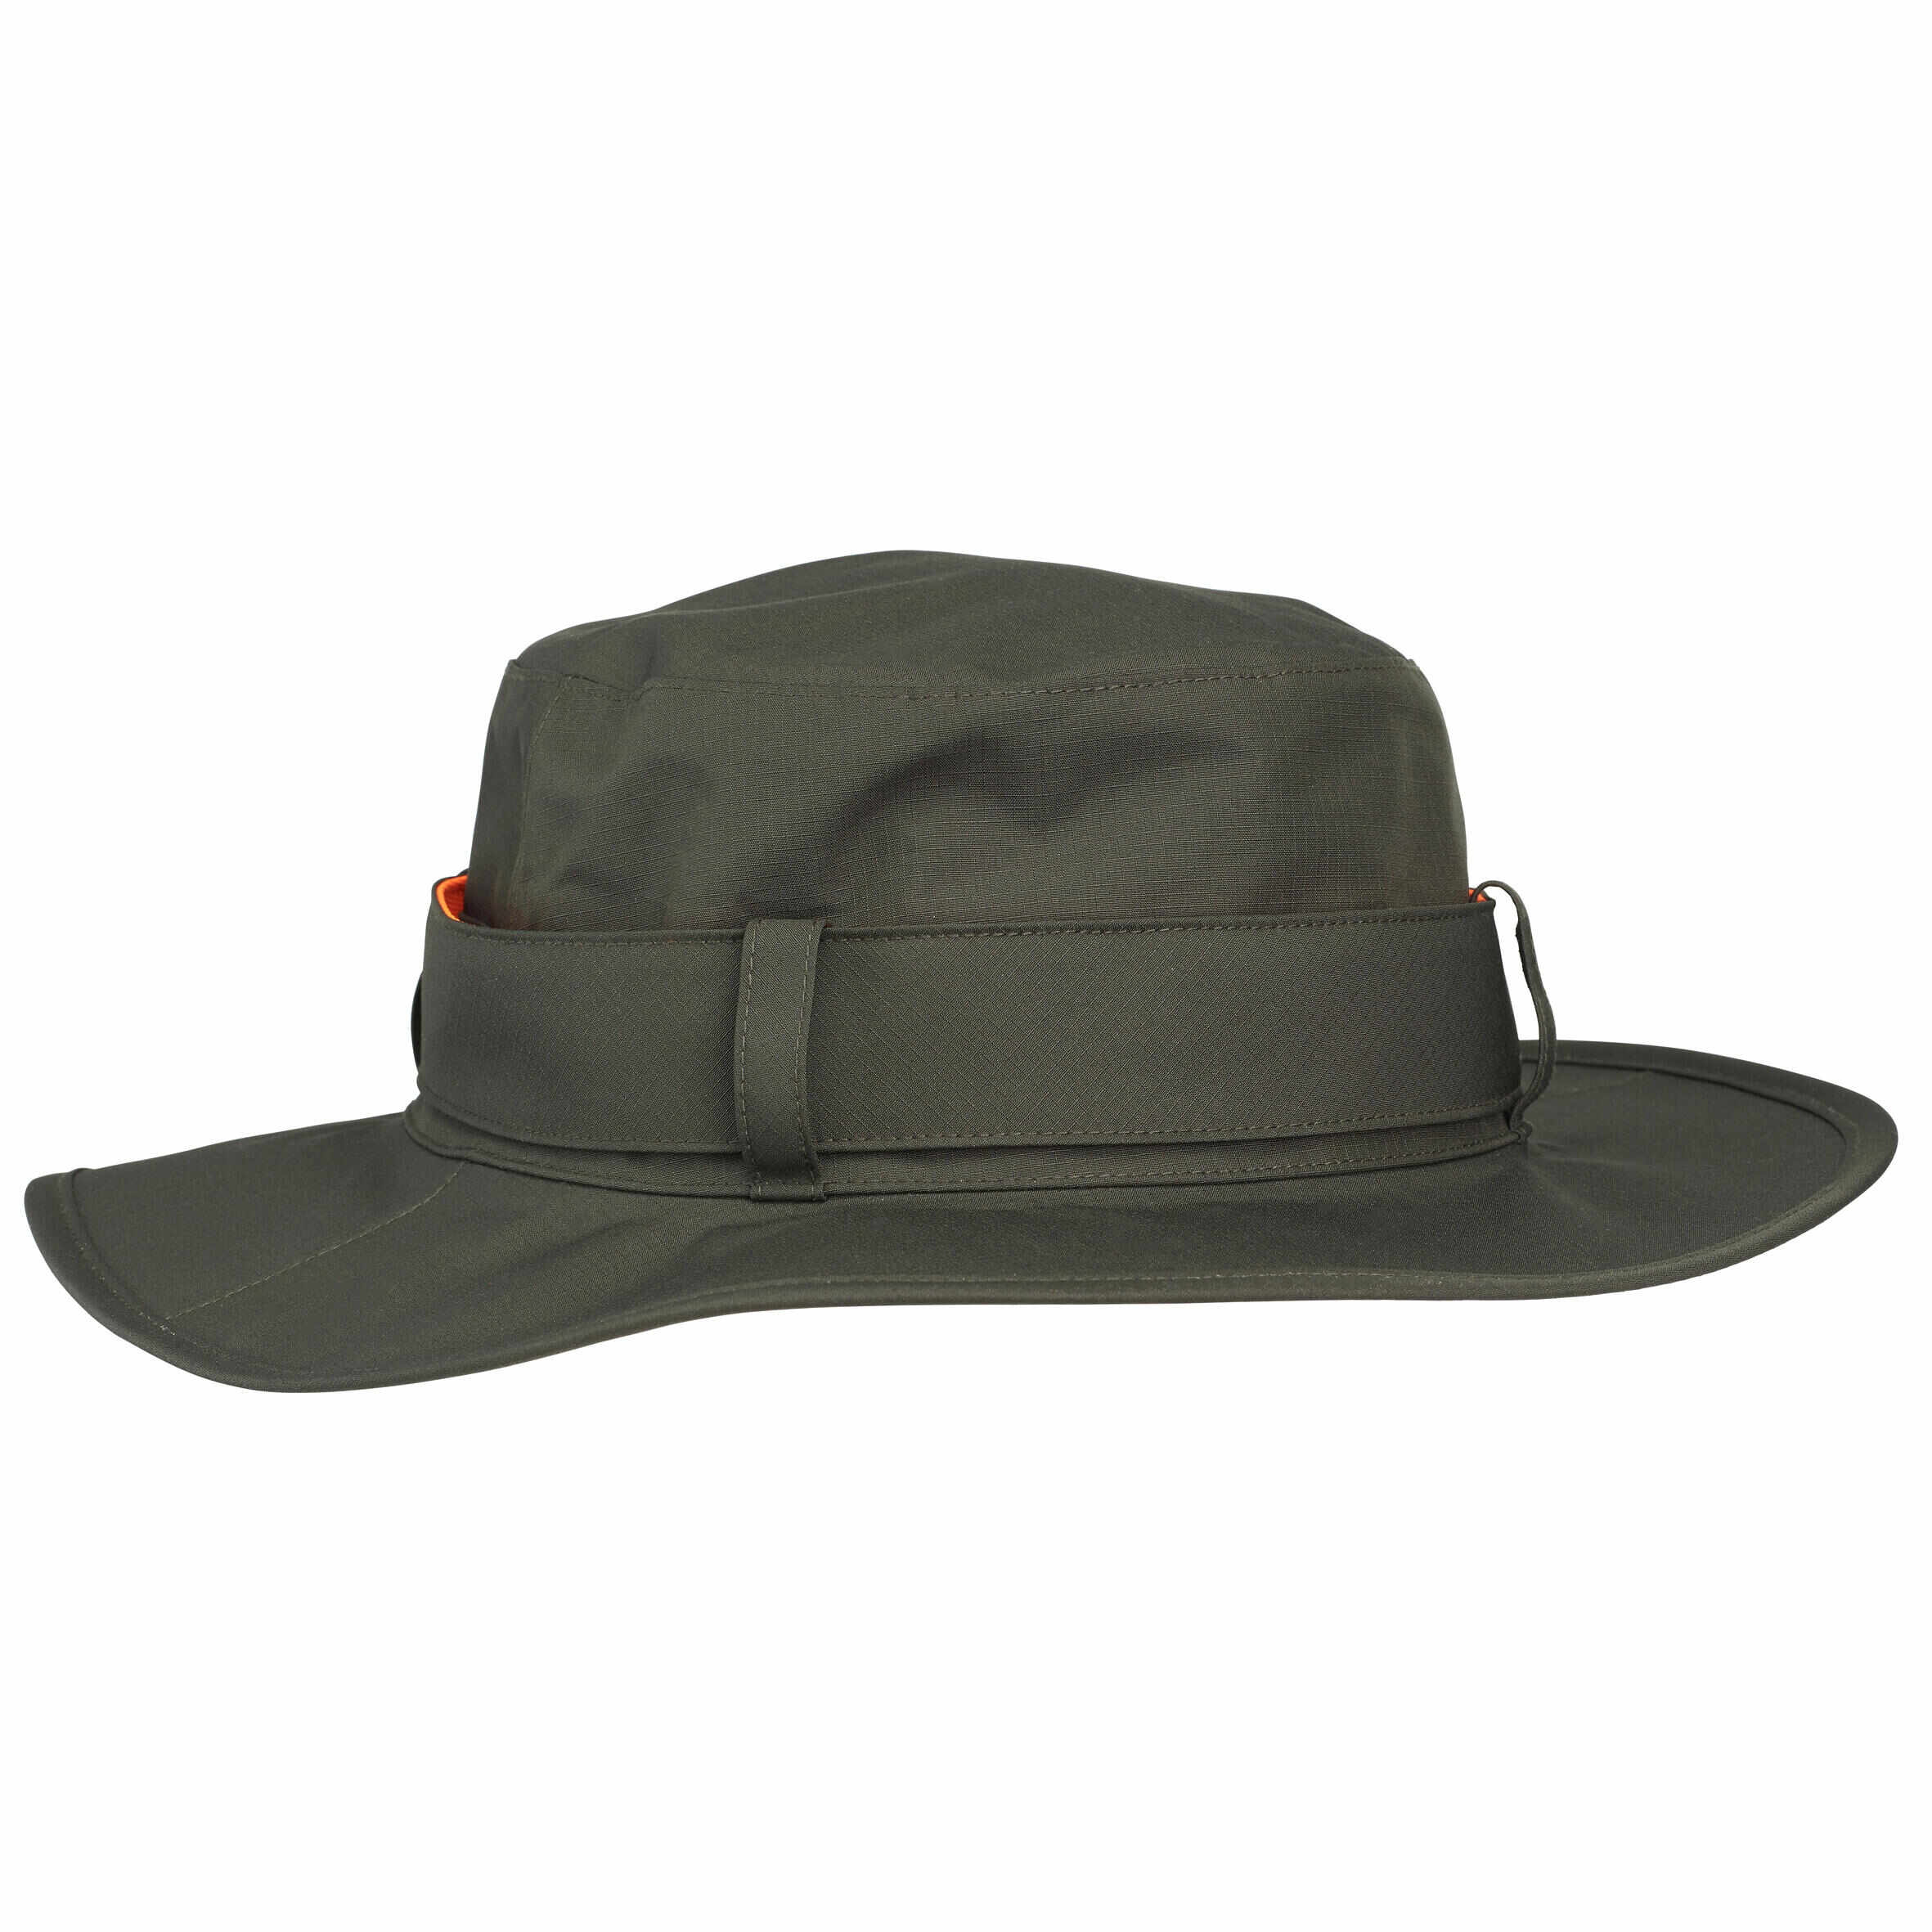 Pălărie SG520 impermeabilă și rezistentă verde bărbați